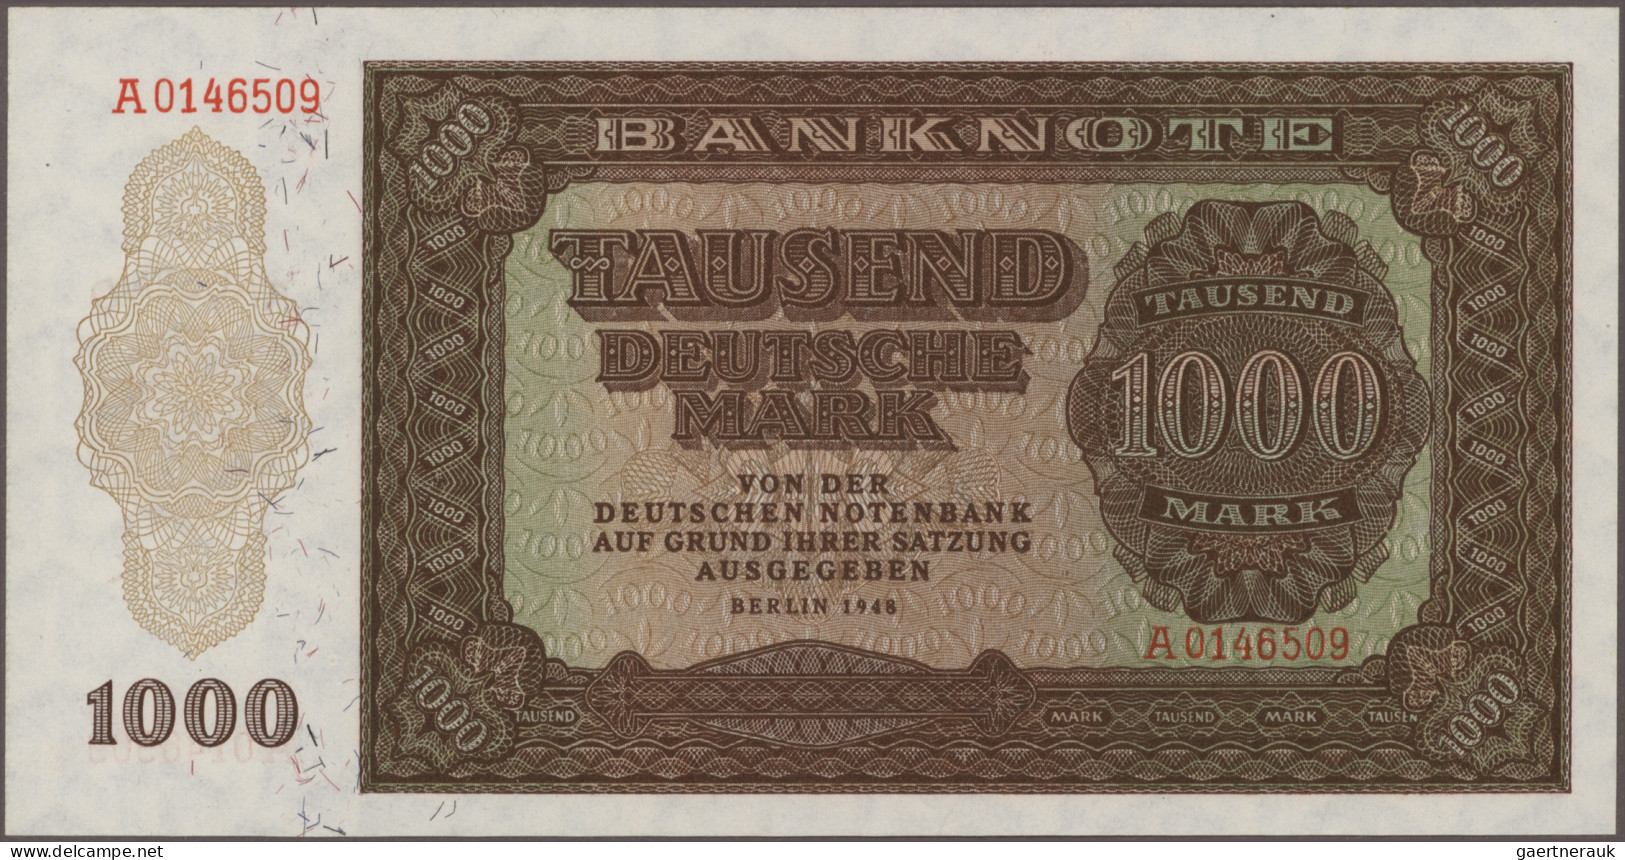 Deutschland - DDR: Deutsche Notenbank und Staatsbank der DDR, Lot mit 51 Banknot